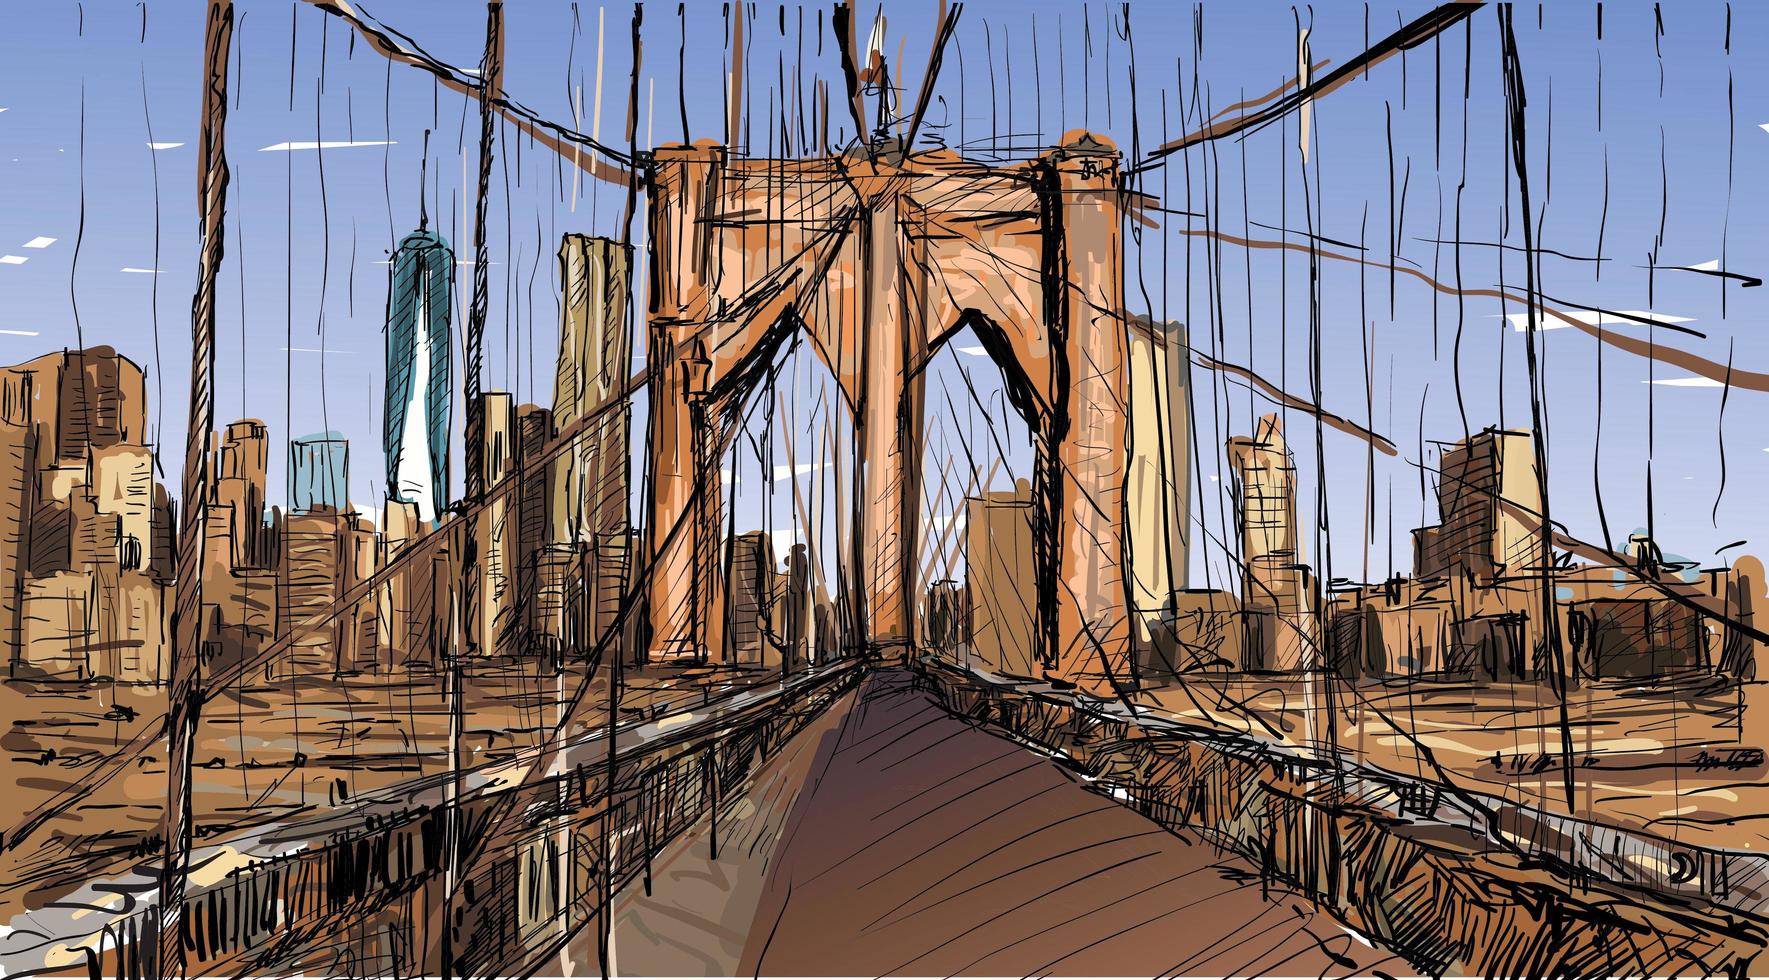 Croquis en couleur du paysage urbain du pont de brooklyn à new york vecteur